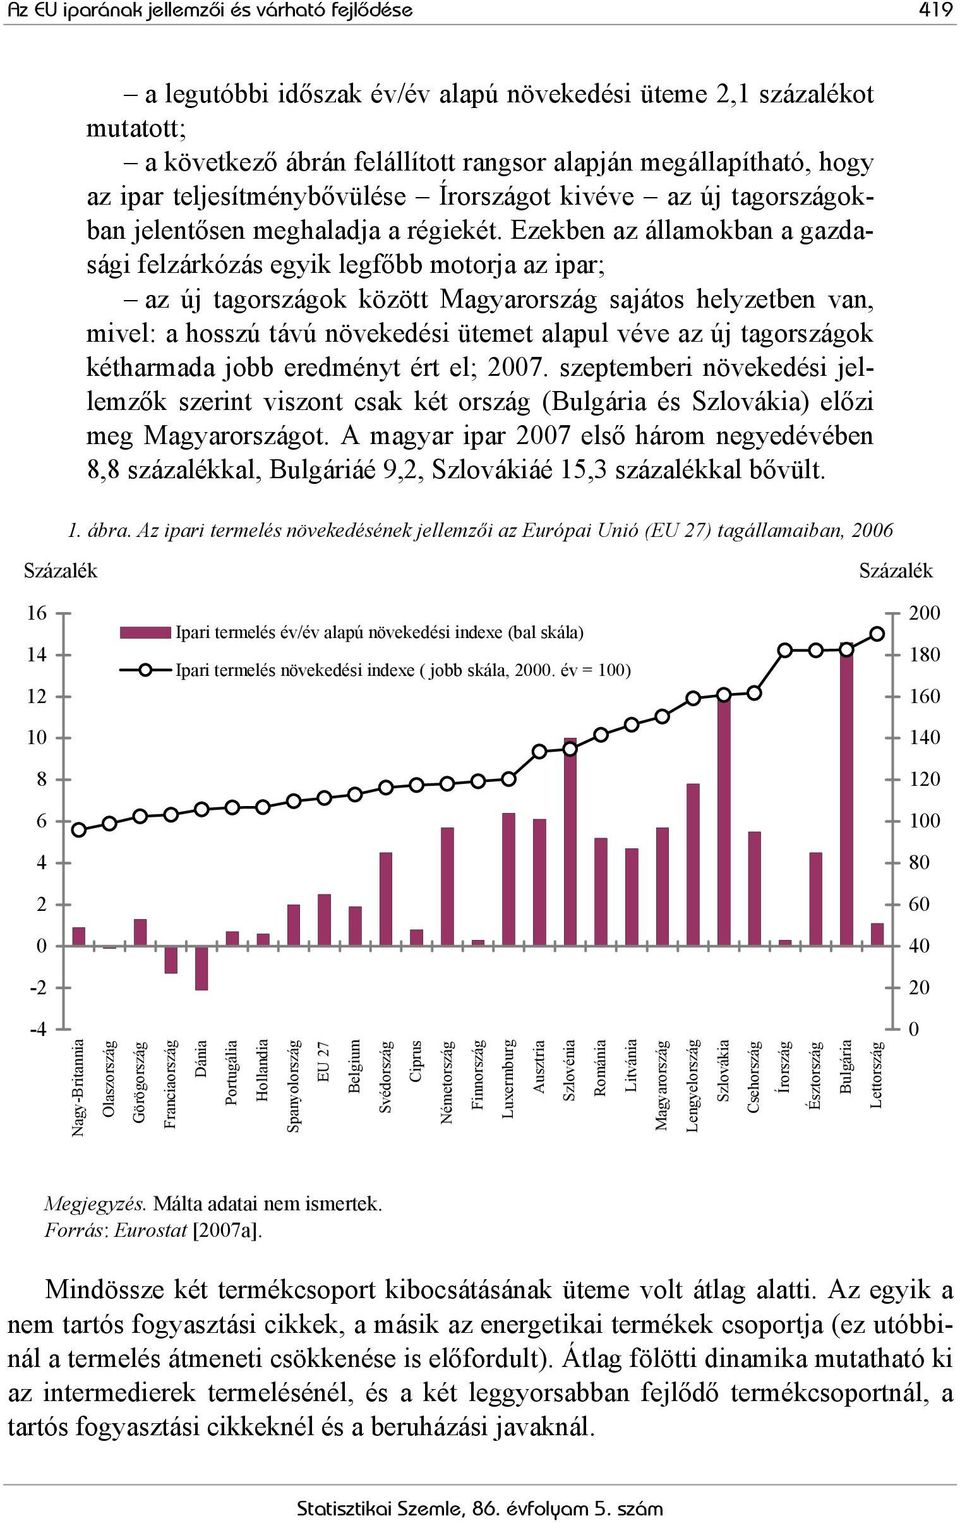 Ezekben az államokban a gazdasági felzárkózás egyik legfőbb motorja az ipar; az új tagországok között Magyarország sajátos helyzetben van, mivel: a hosszú távú növekedési ütemet alapul véve az új